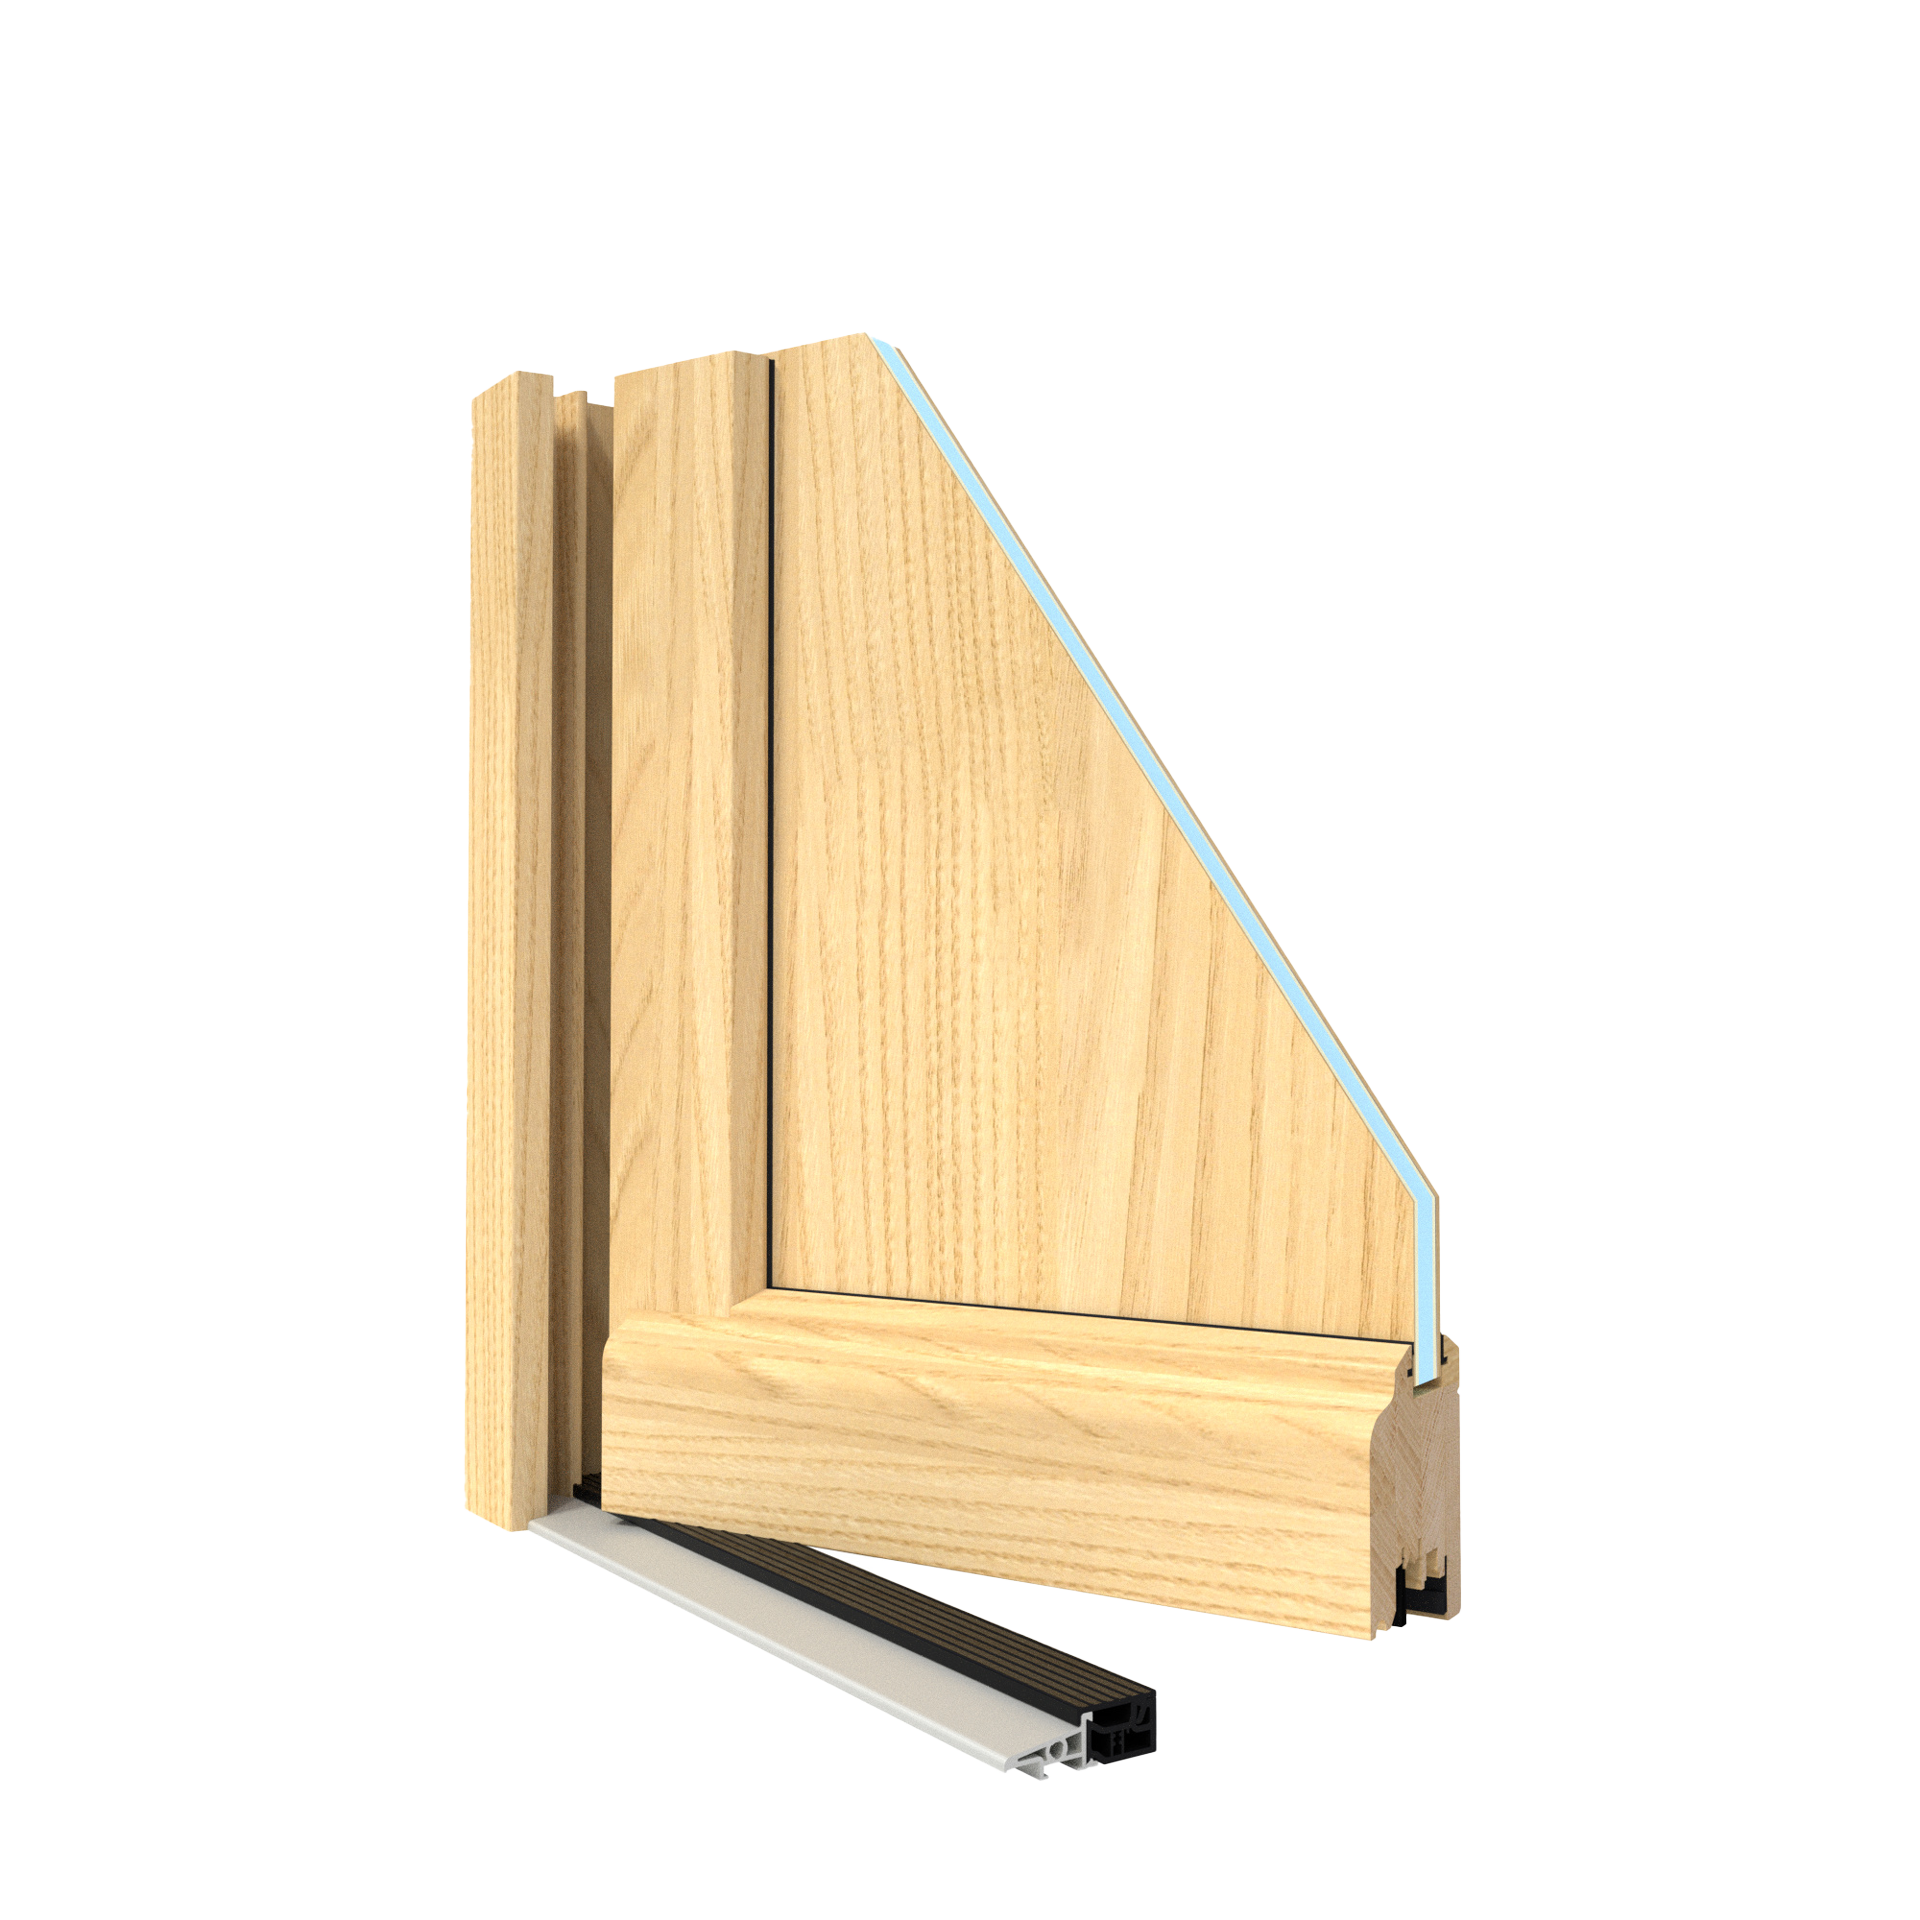 Vue en coupe d'un angle de porte en bois